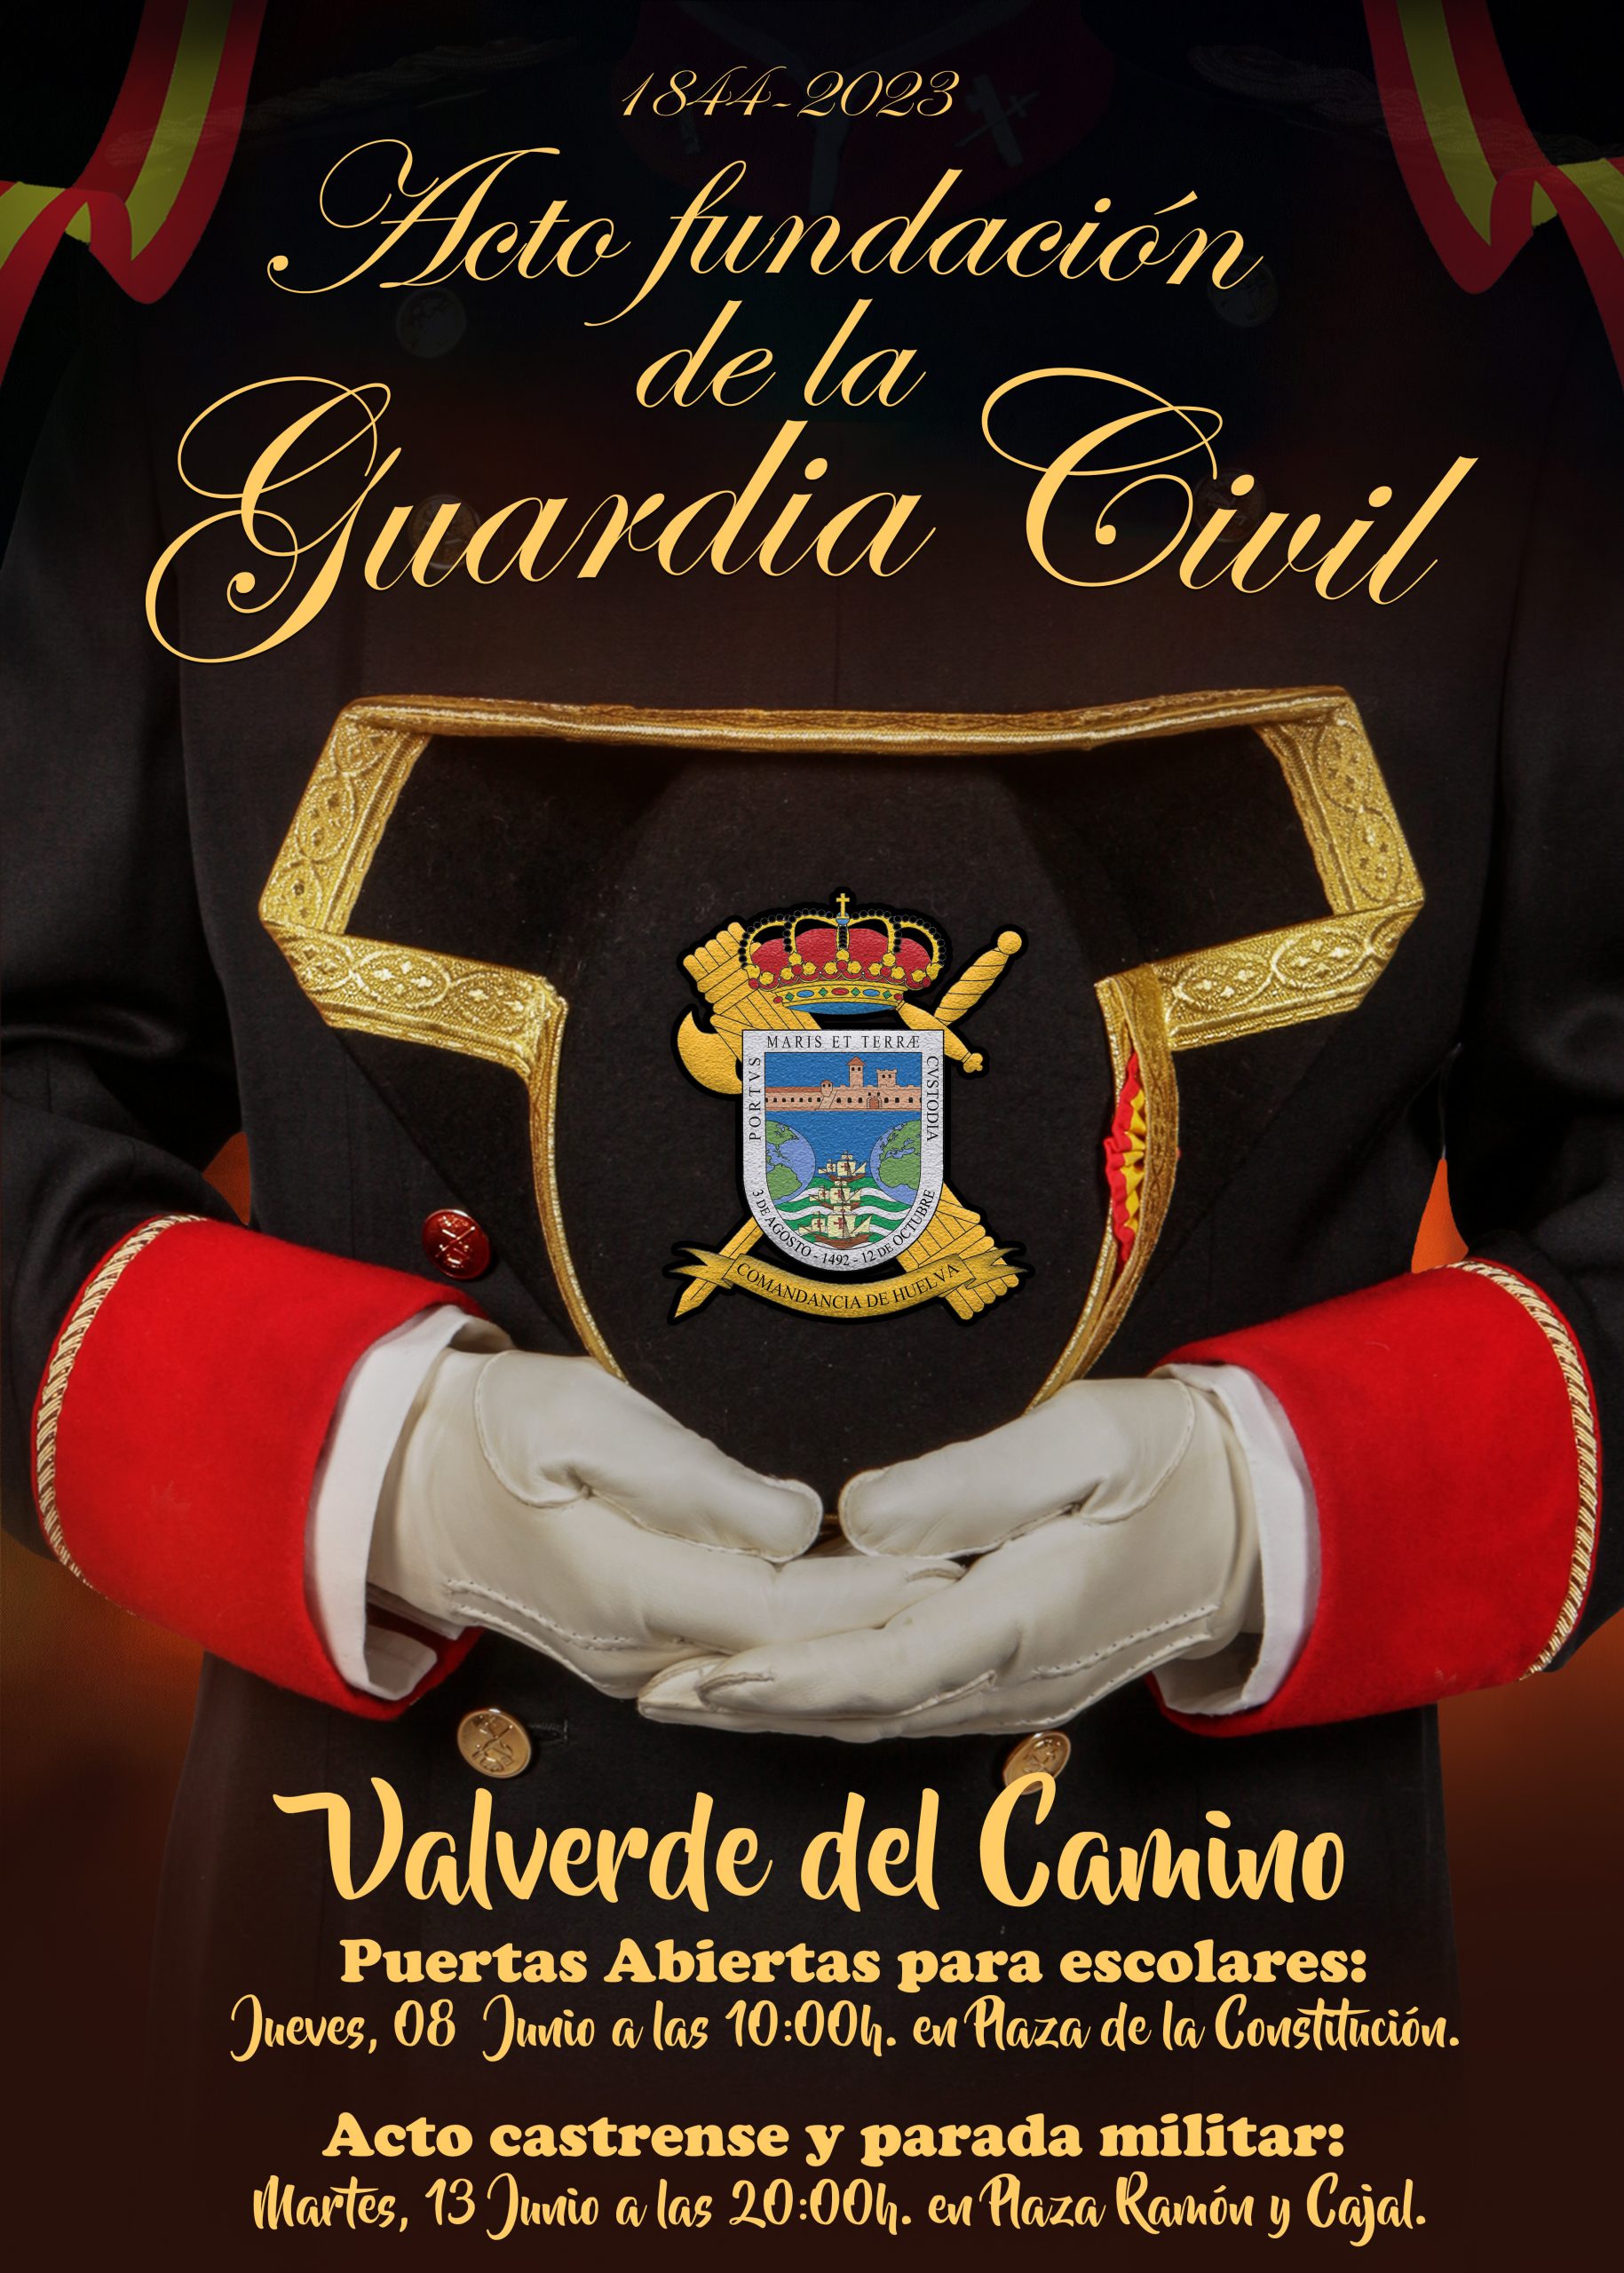 La Guardia Civil celebra el 179 Aniversario de su Fundación en la localidad de Valverde del Camino